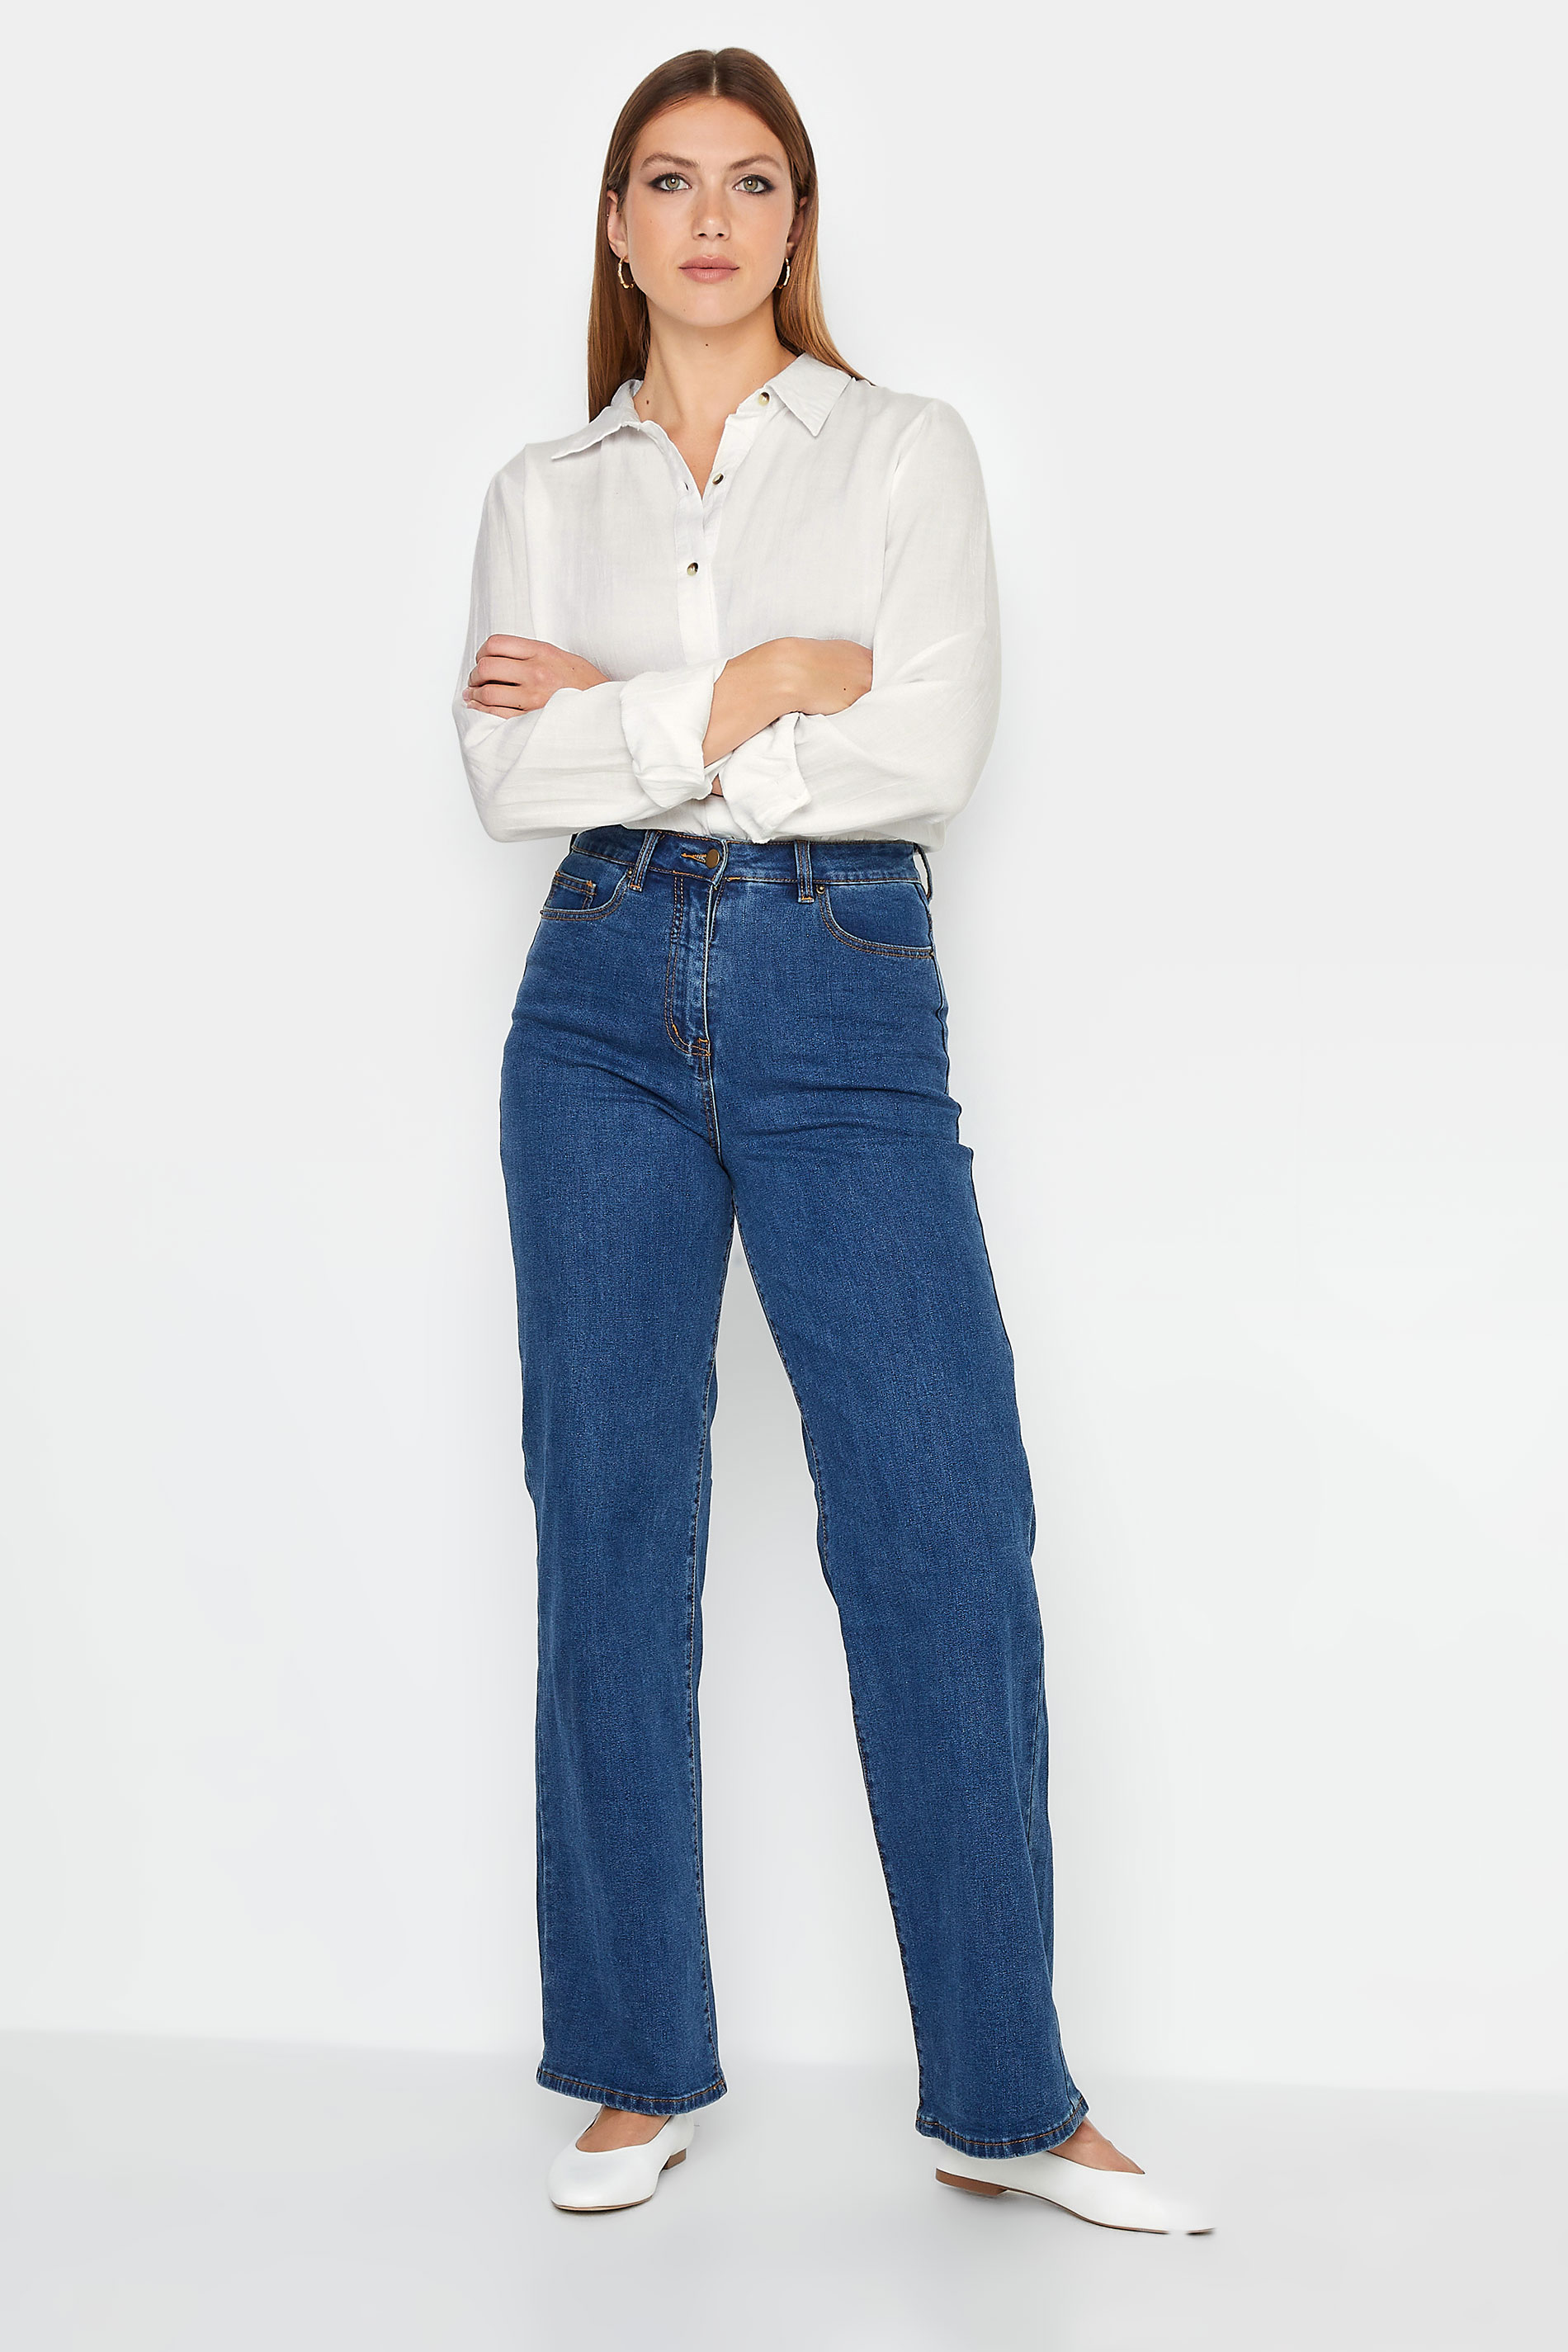 LTS Tall Womens White Long Sleeve Linen Shirt | Long Tall Sally  3